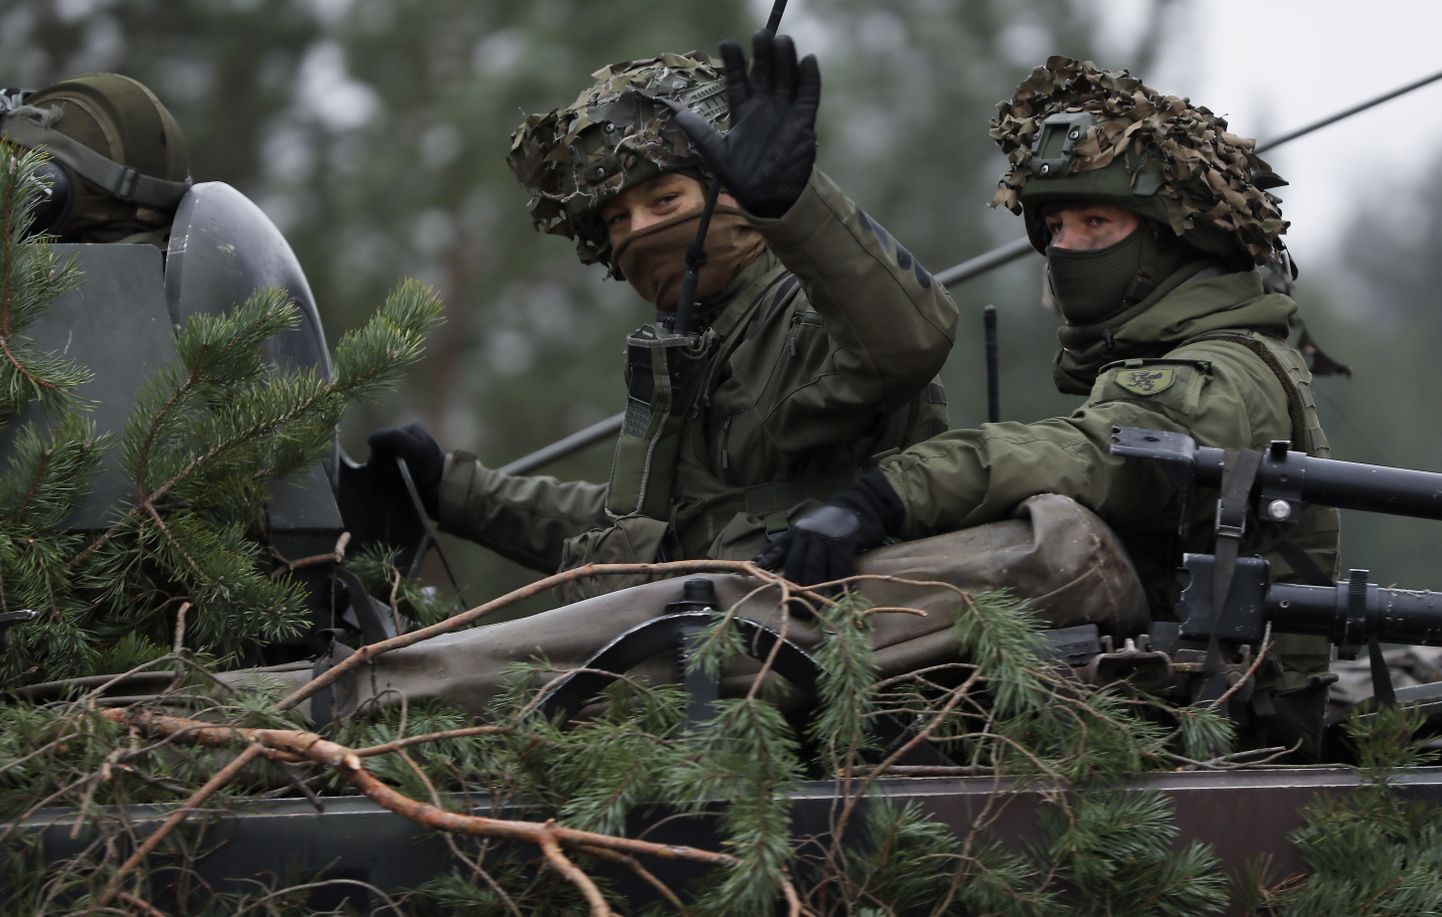 Ādažu poligonā notiek starptautiskās militārās mācības "Winter Shield", lai trenētu un pilnveidotu vienību kaujas spējas un bruņoto spēku savstarpējo sadarbību un savietojamību Baltijas reģiona aizsardzības nodrošināšanai.